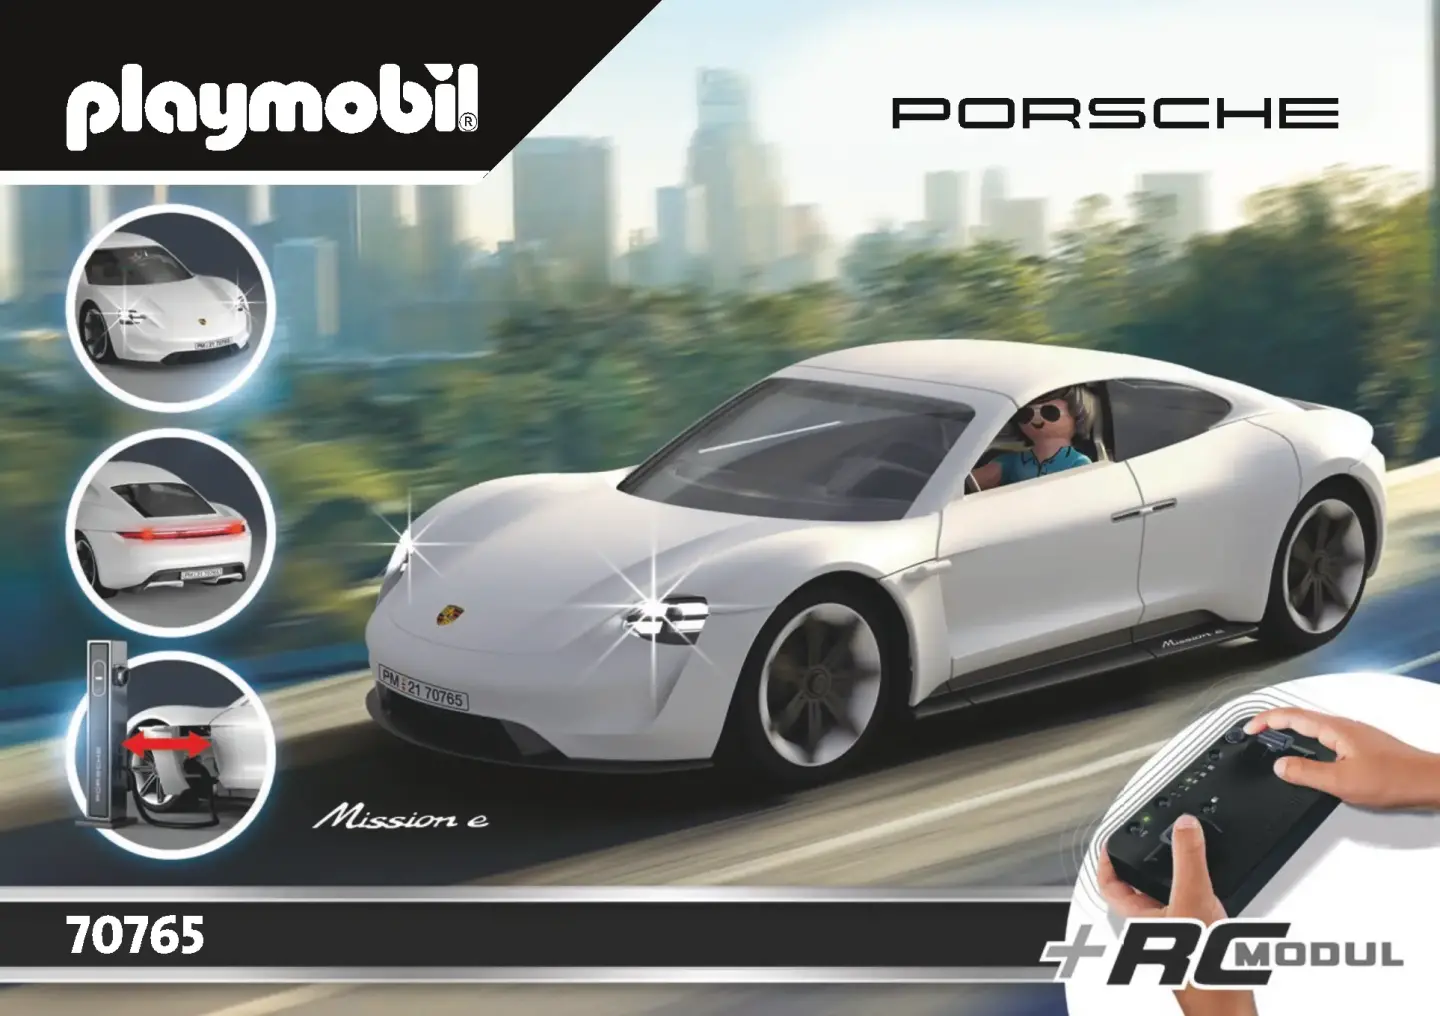 Porsche Mission E - Vorstellung des Playmobil-Modells mit